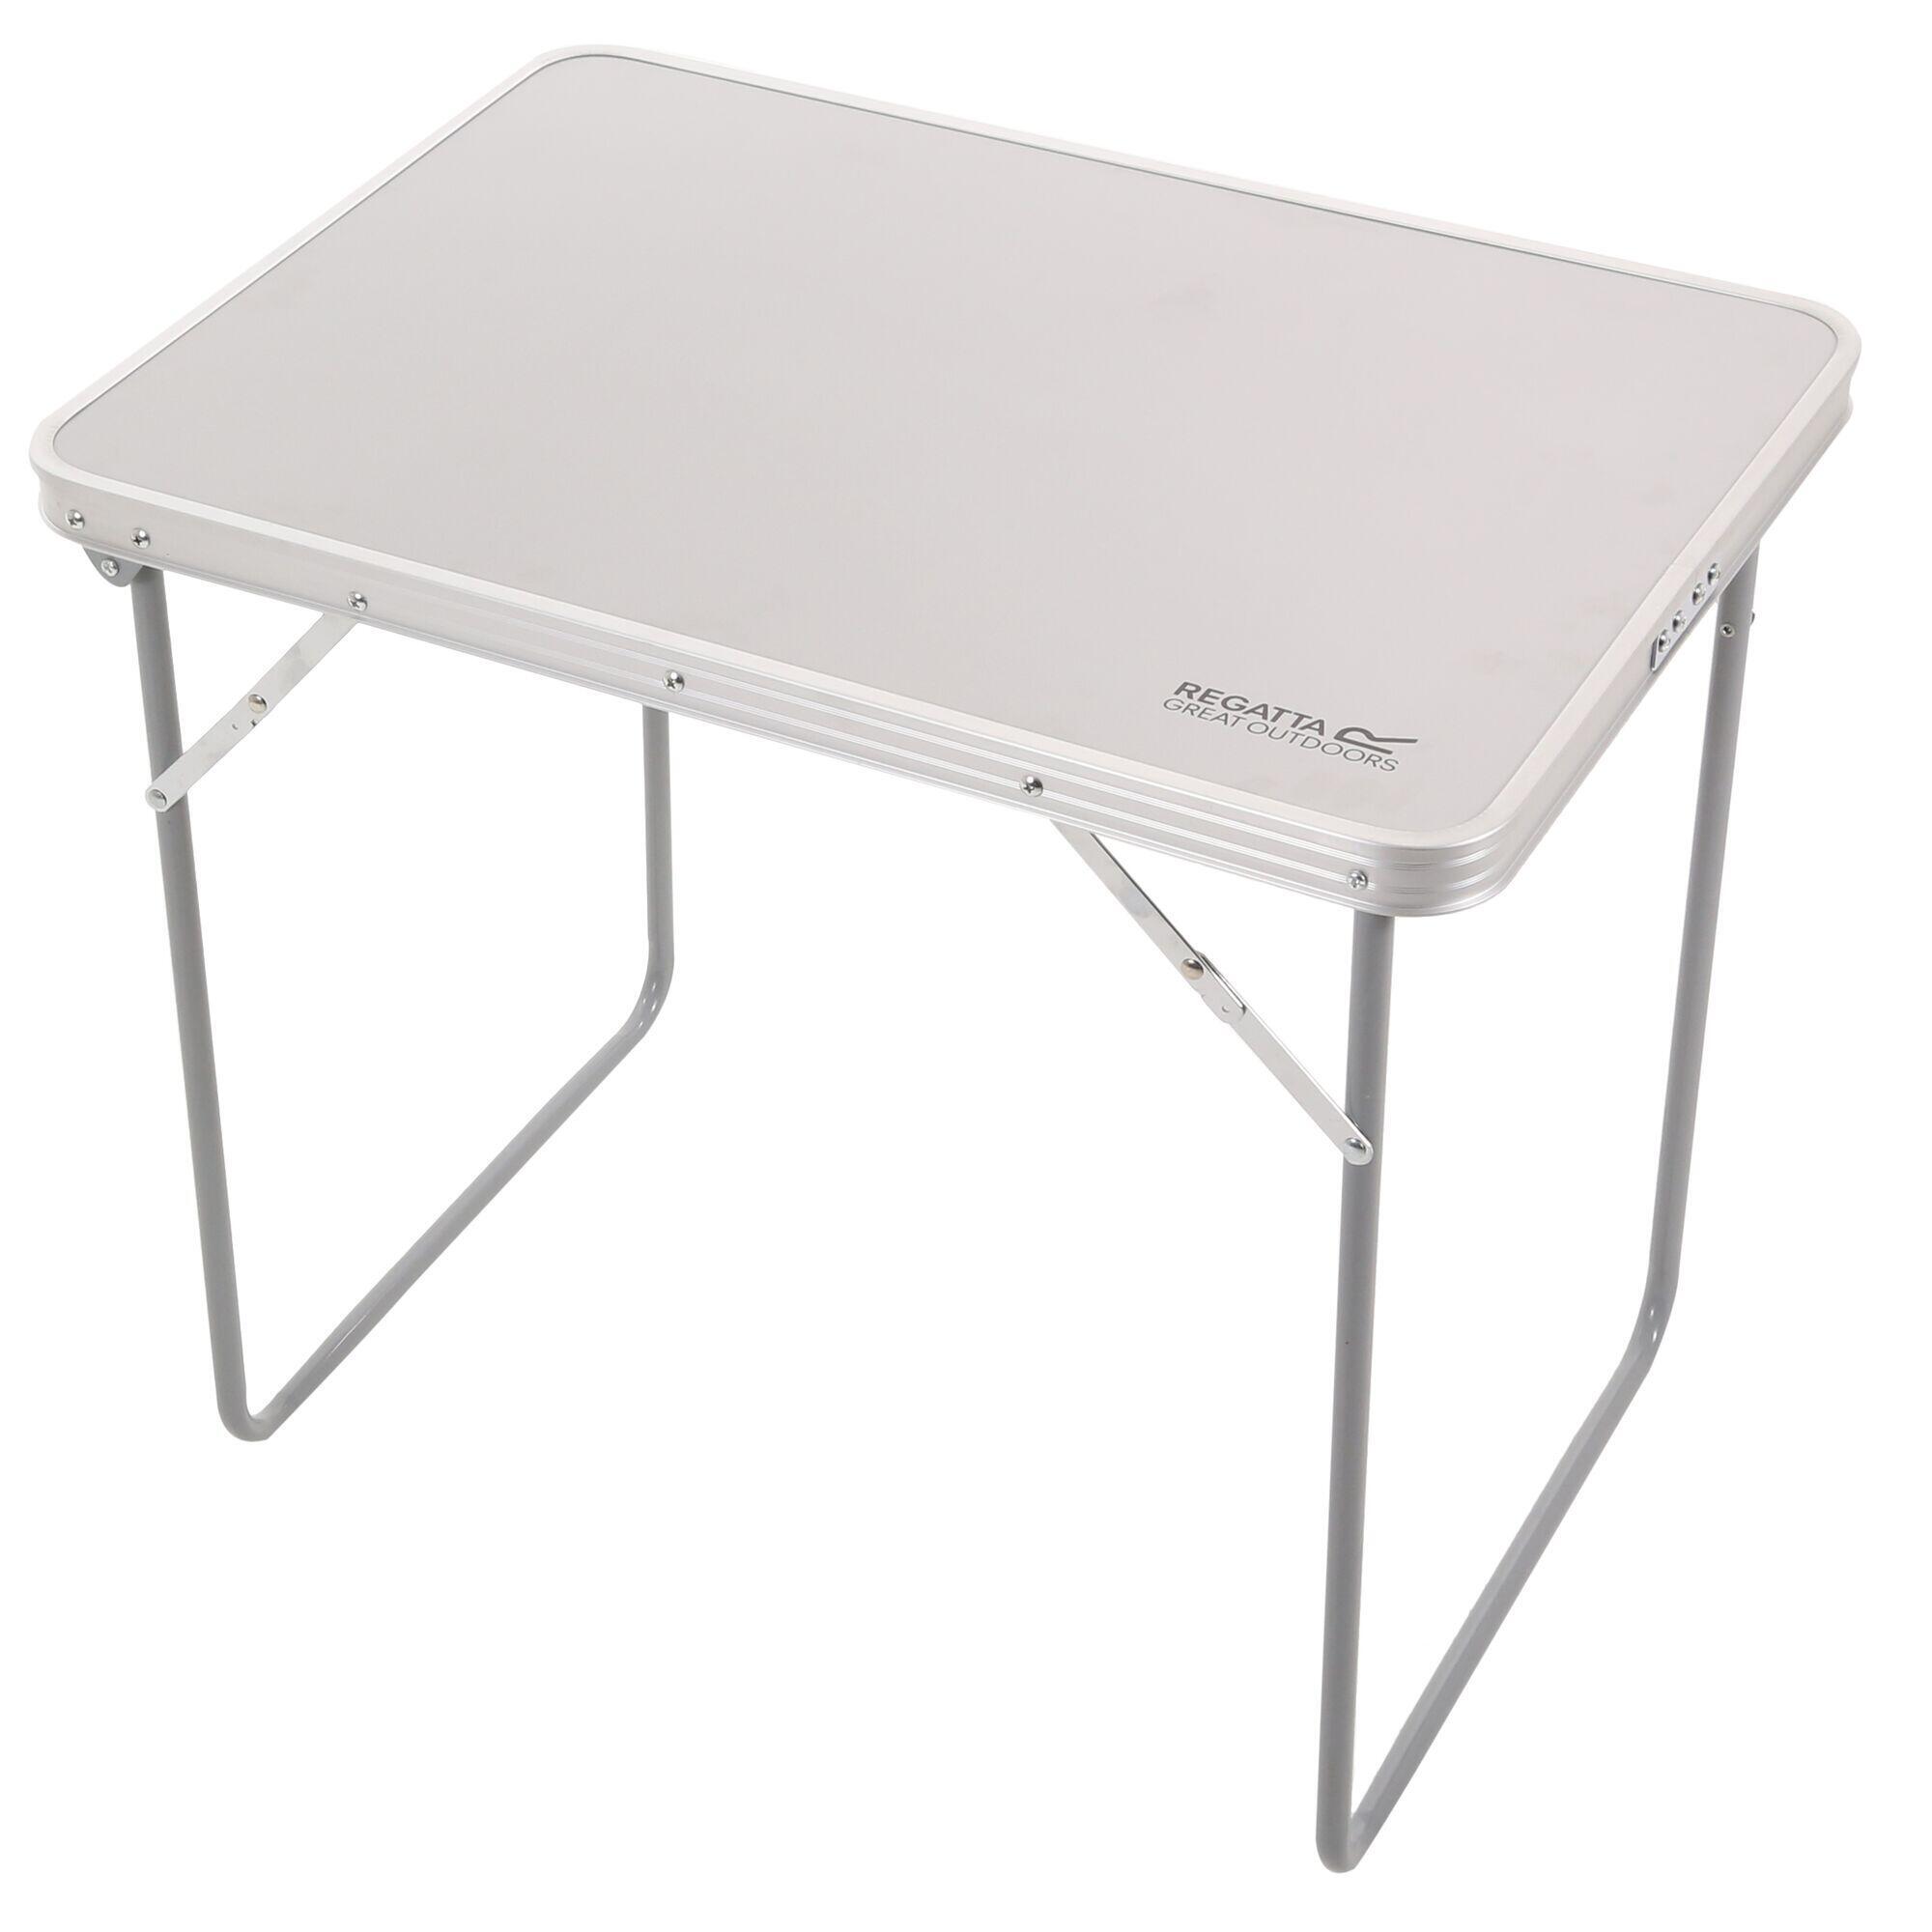 Стол складной Regatta Matano для кемпинга, серый складной стол для пляжа кемпинга пикника портативный стол с сумкой для переноски легкий складной мини стол для пикника